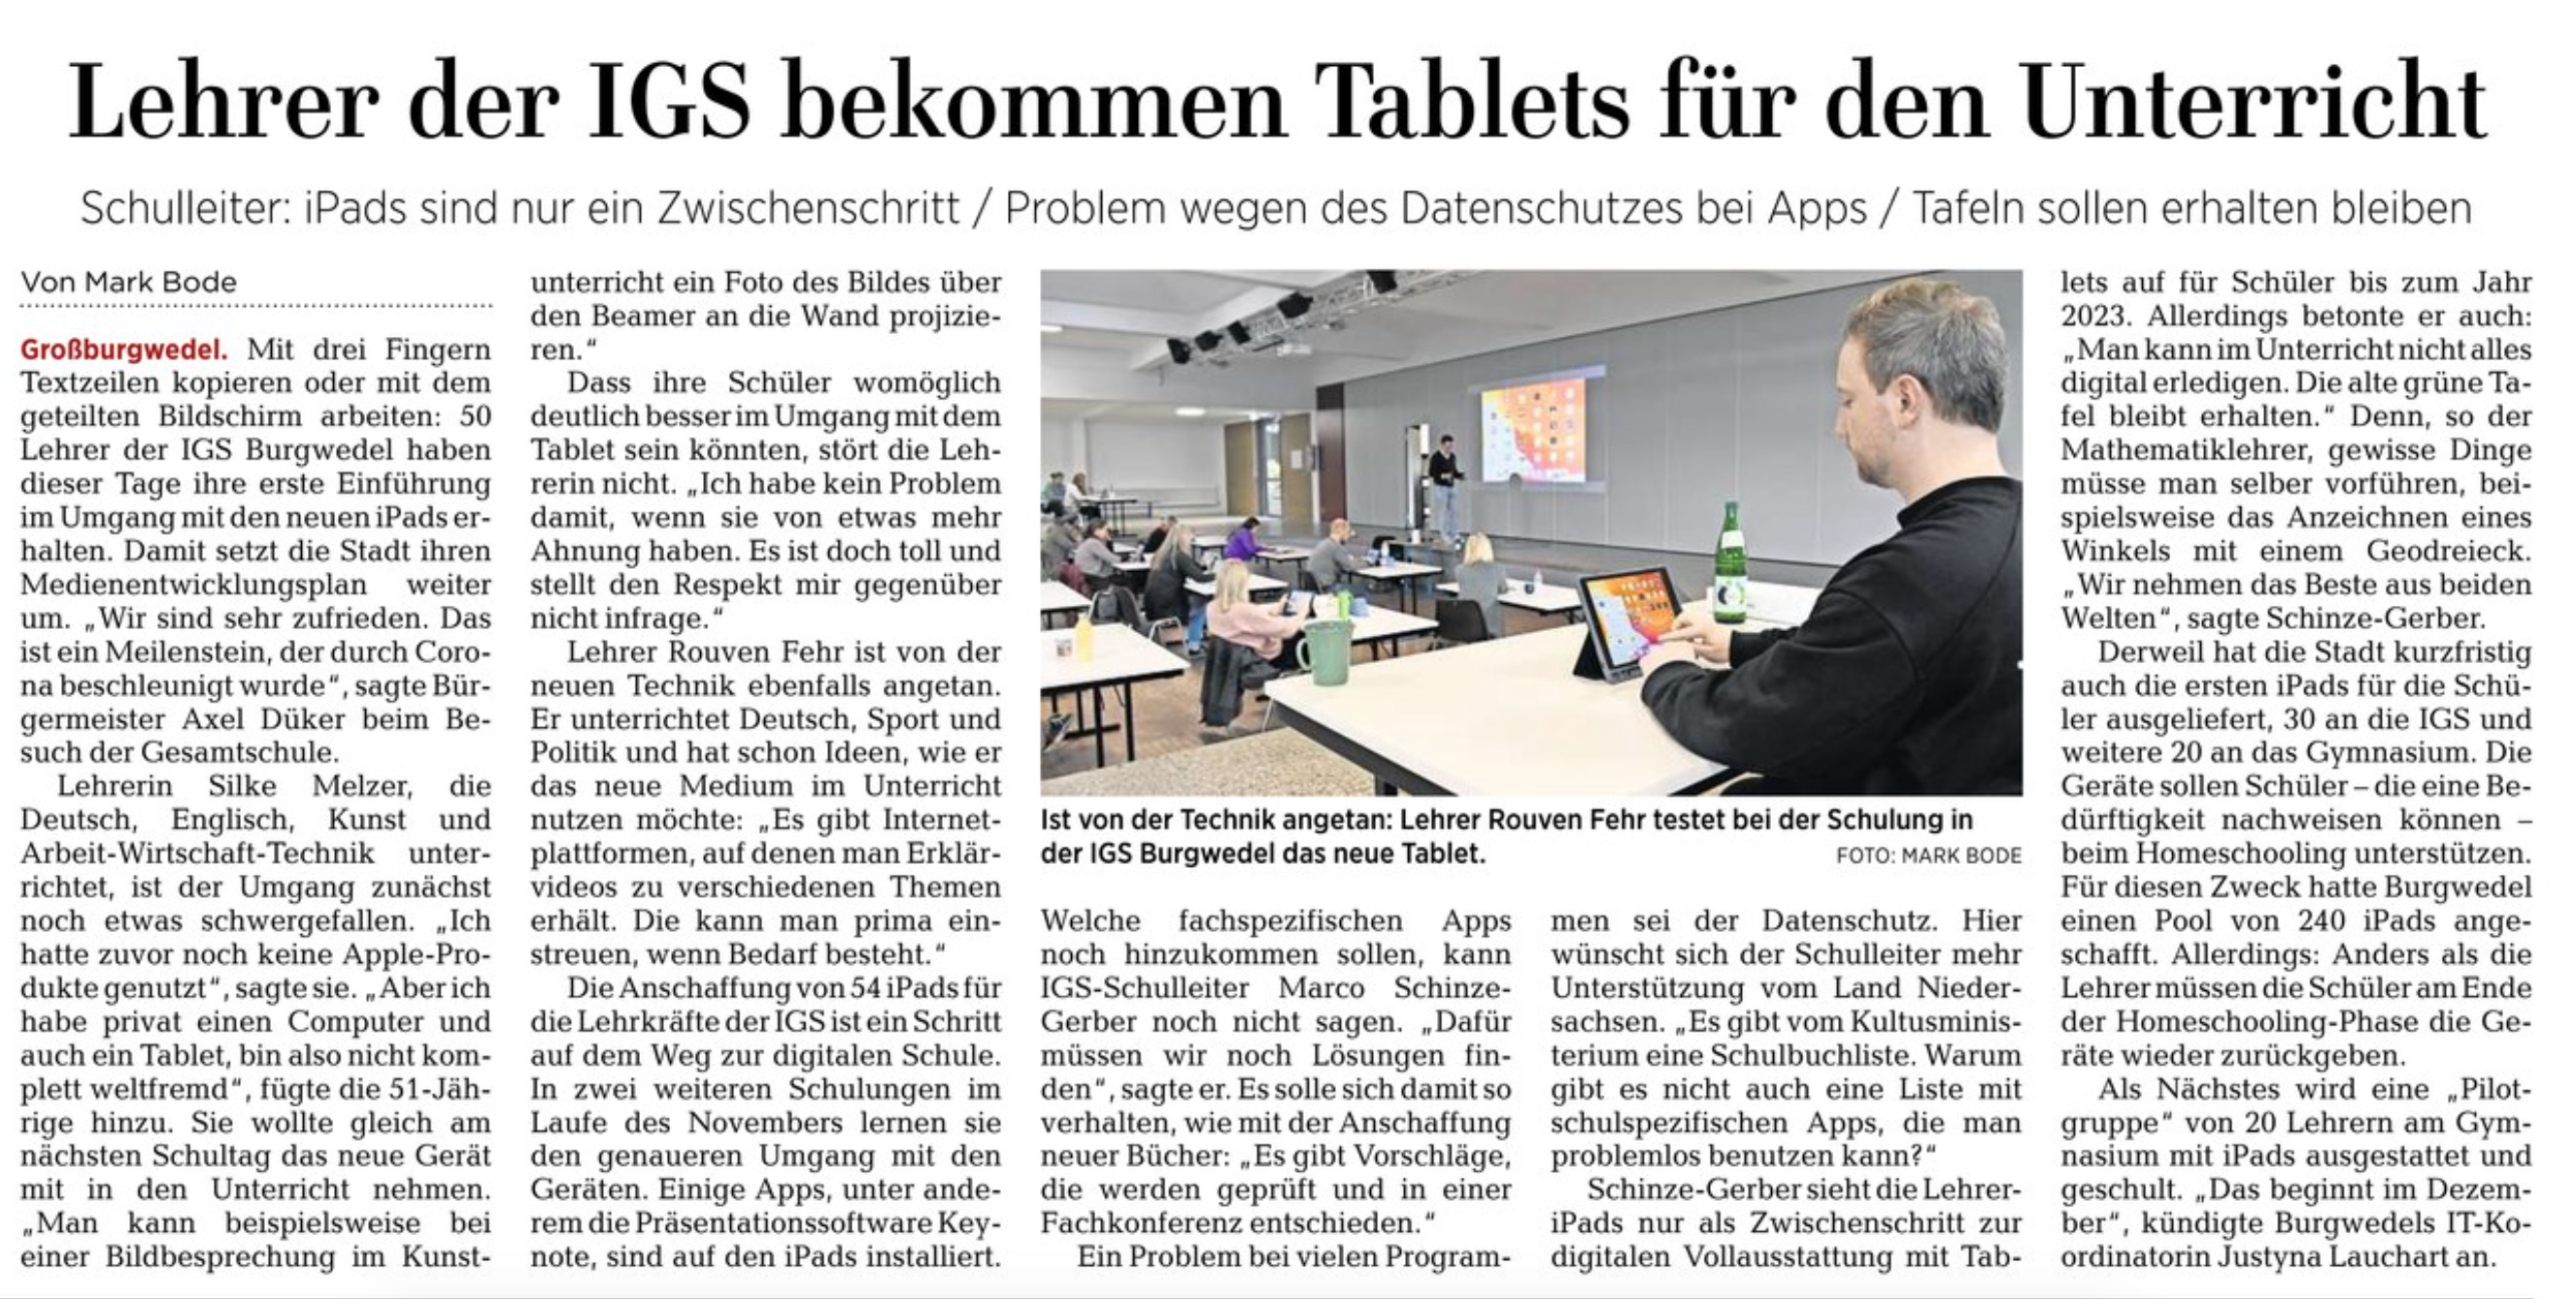 Presse: Lehrer der IGS bekommen Tablets für den Unterricht